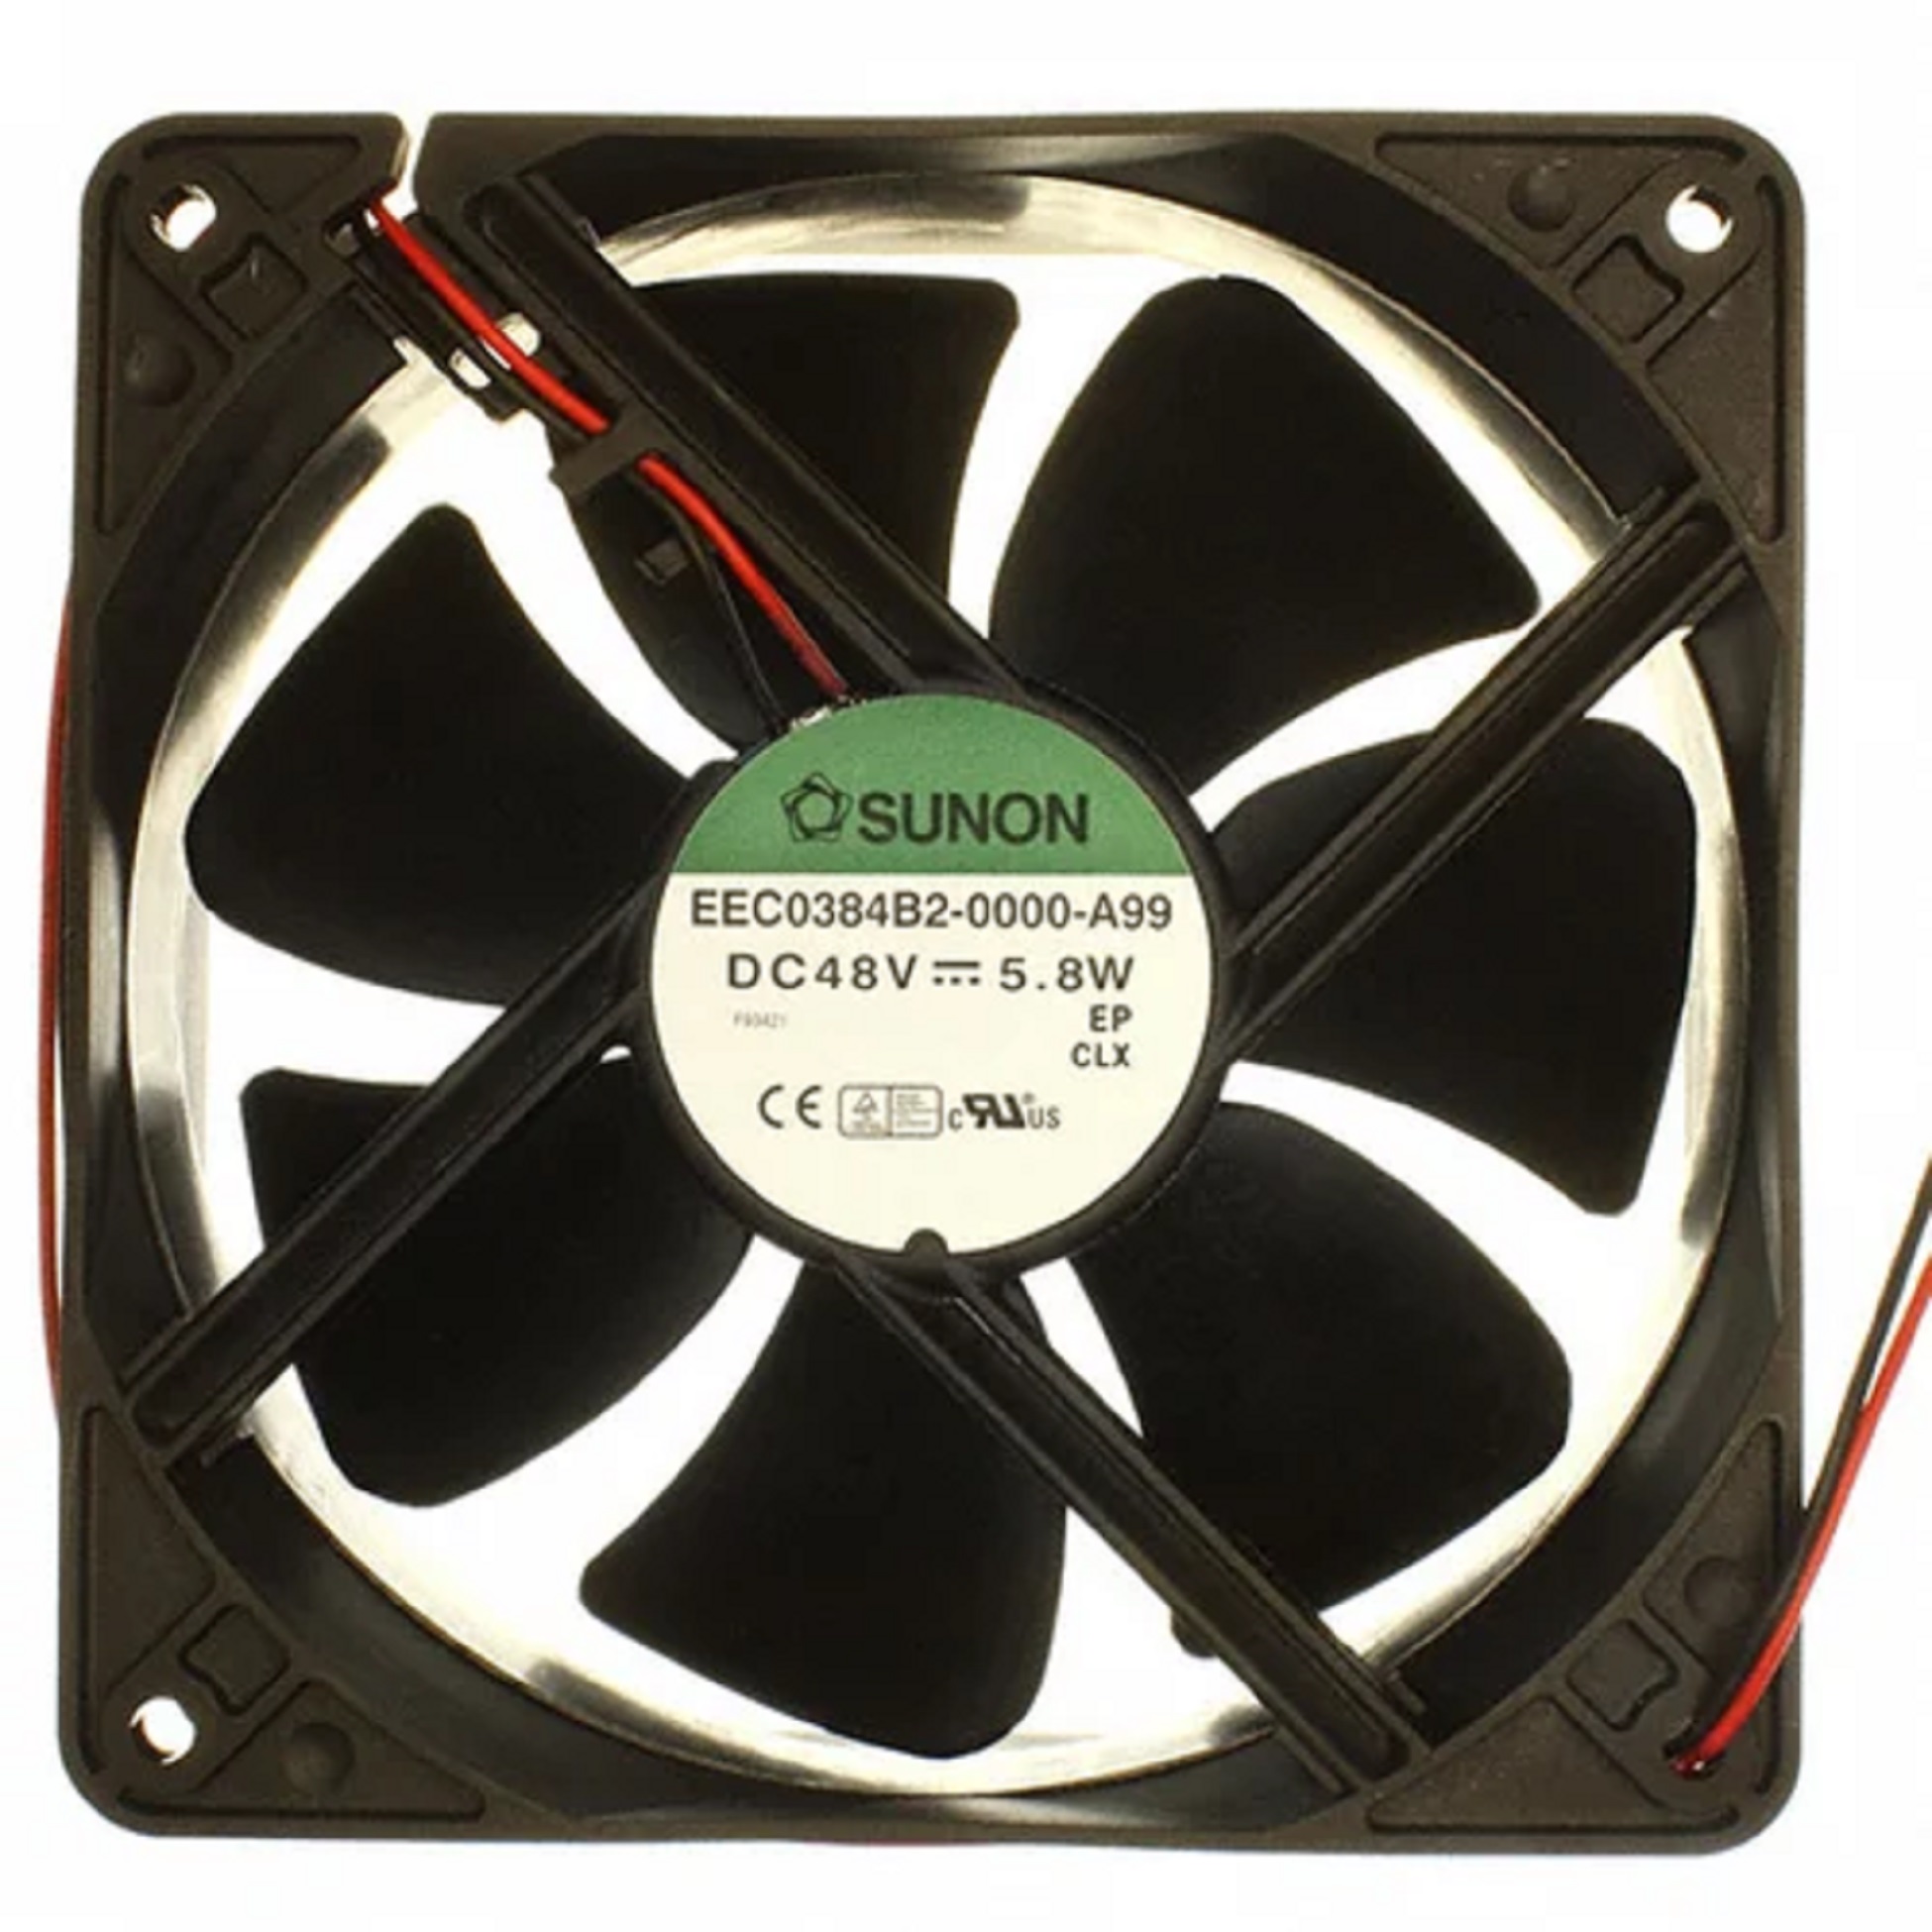 EEC0384B2-0000-A99 Sunon Cooling Fan